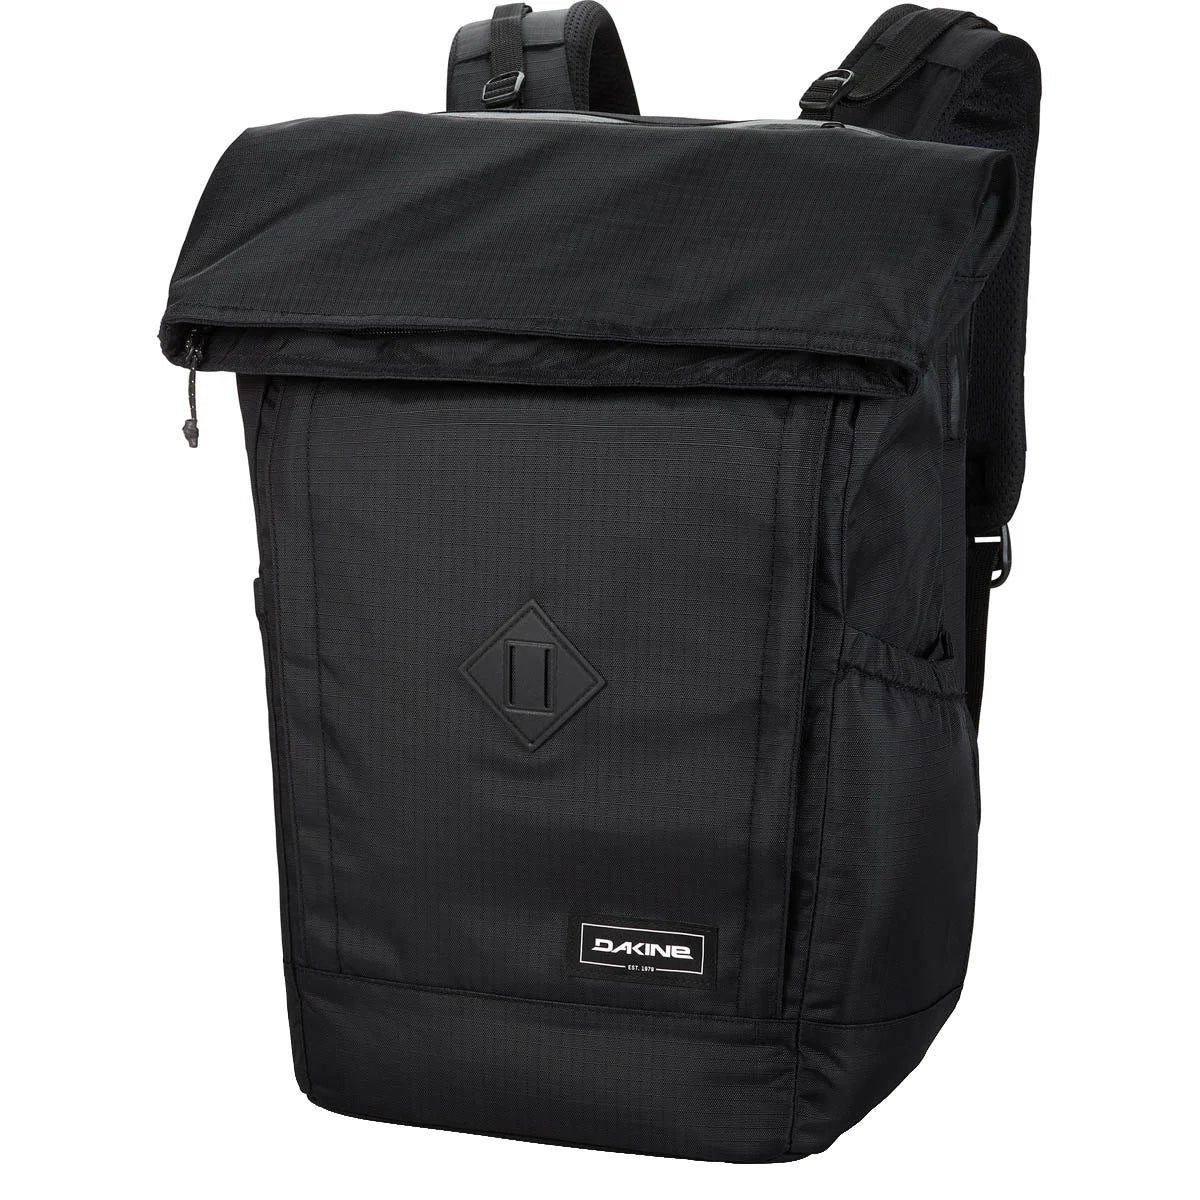 Dakine Packs & Bags Infinity Pack 21L Rucksack 46 cm - black ripstop